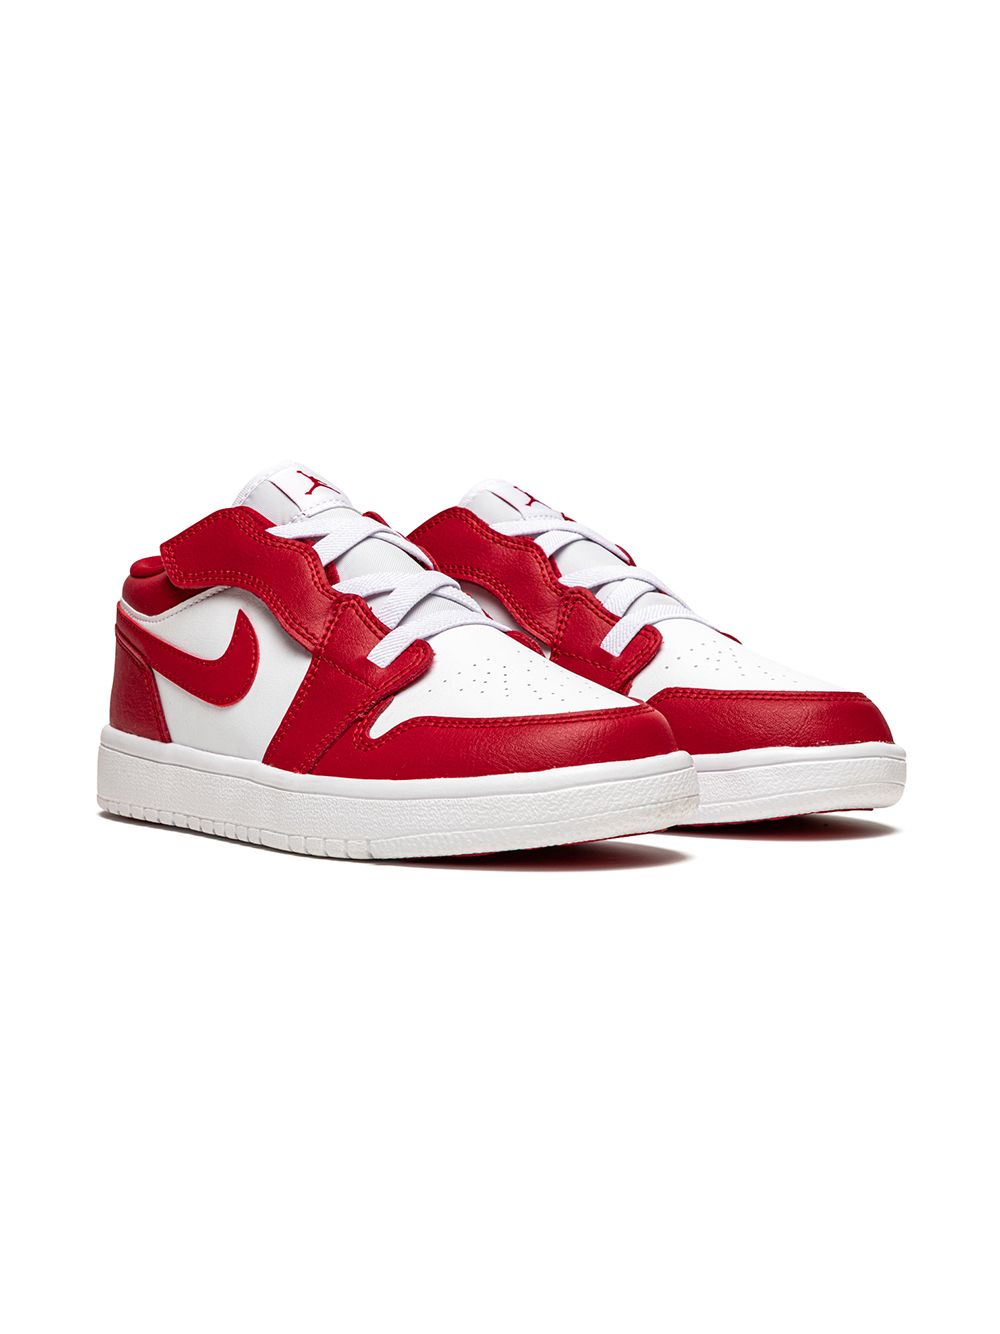 Jordan 1 Low Alt Sneakers In Red